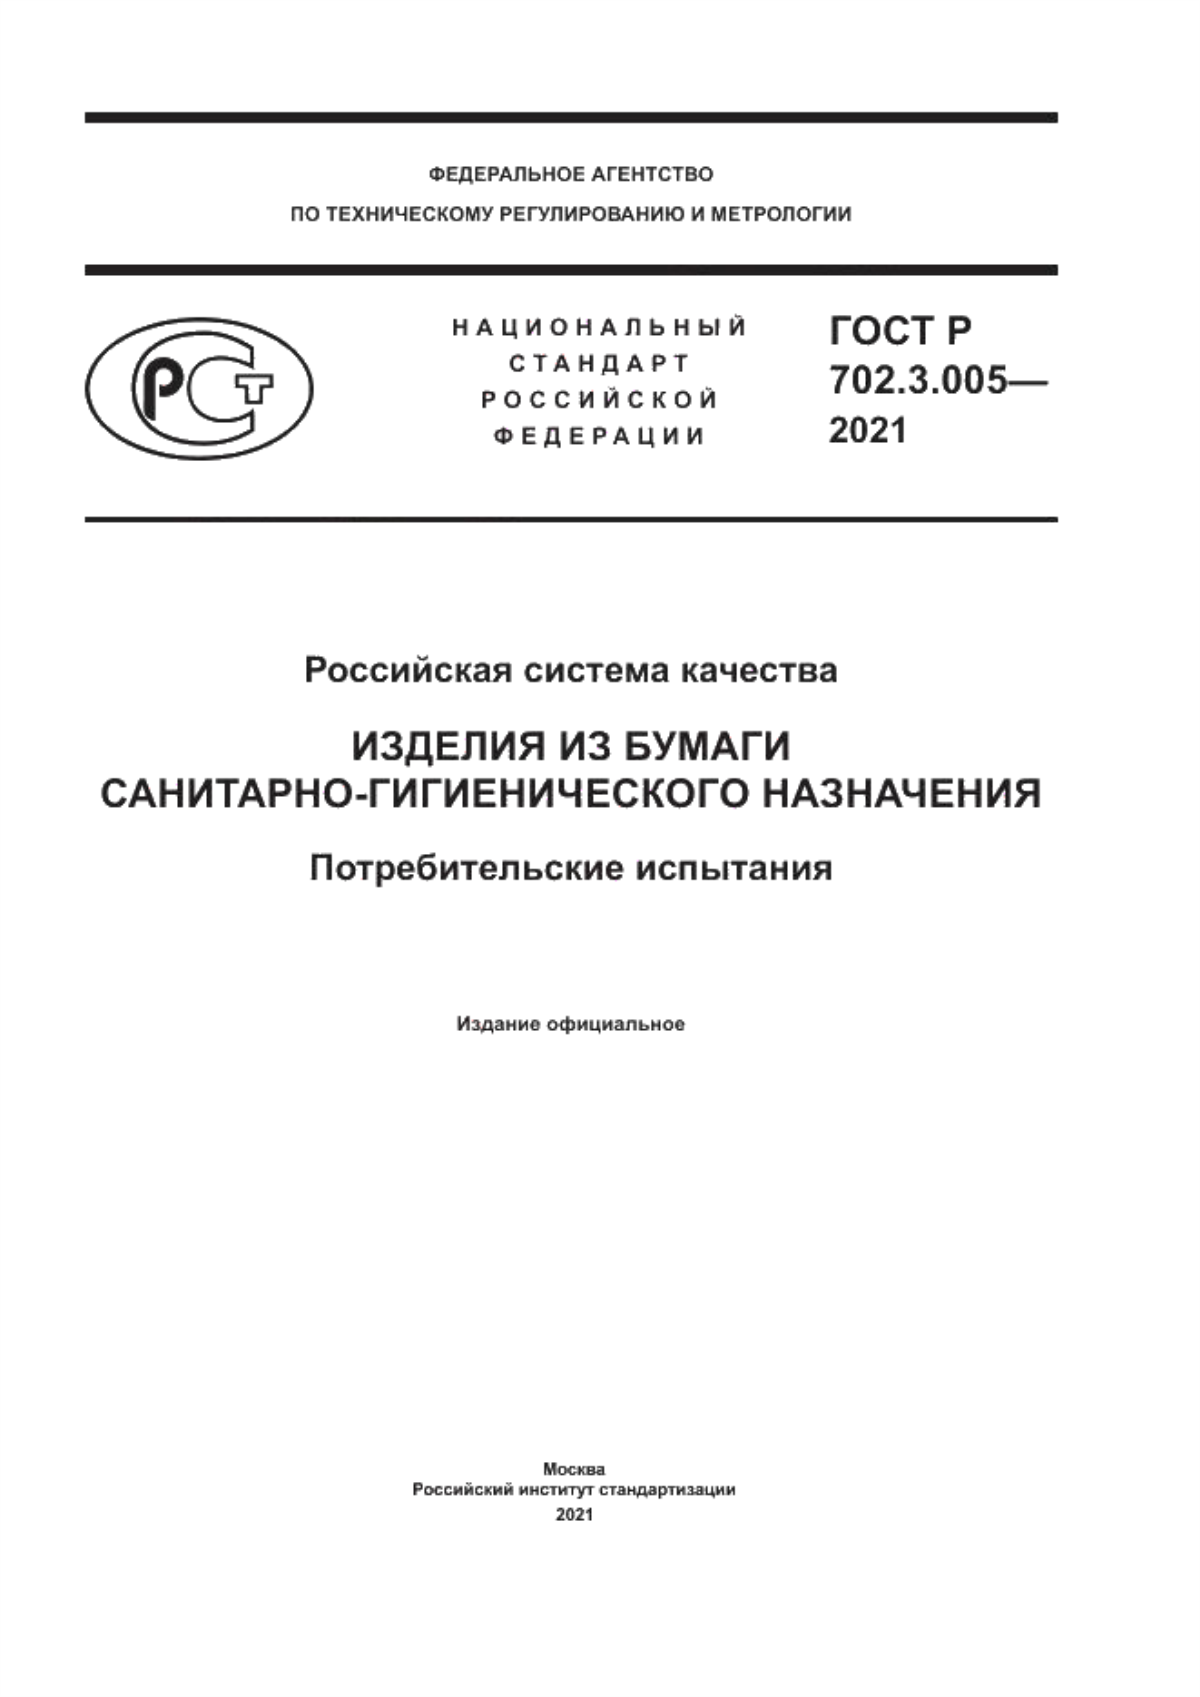 ГОСТ Р 702.3.005-2021 Российская система качества. Изделия из бумаги санитарно-гигиенического назначения. Потребительские испытания